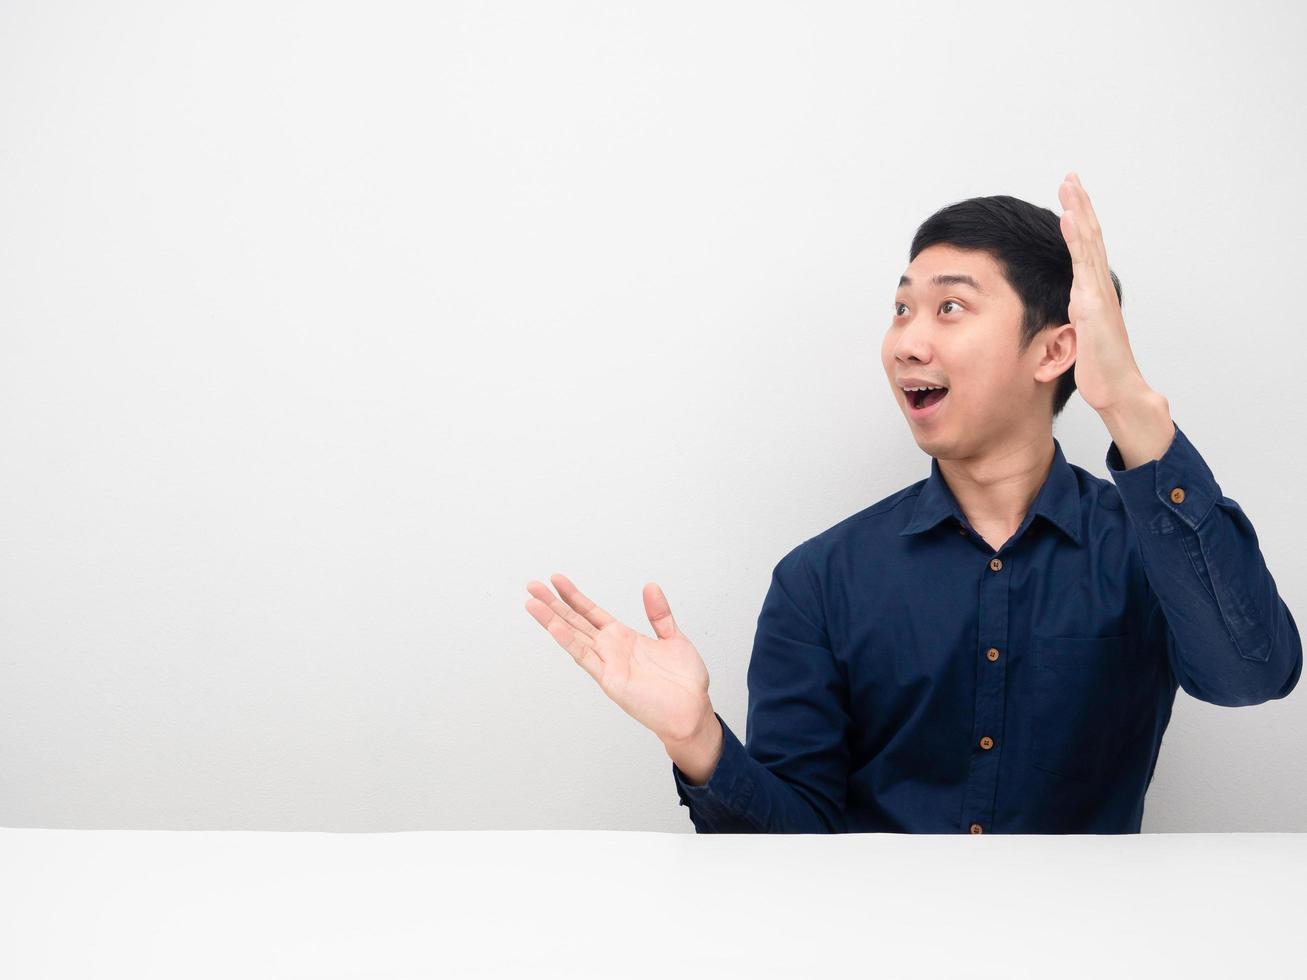 asiatischer mann, der sich erstaunt fühlt, zeigt die hand nach oben und betrachtet den weißen hintergrund des kopienraums foto